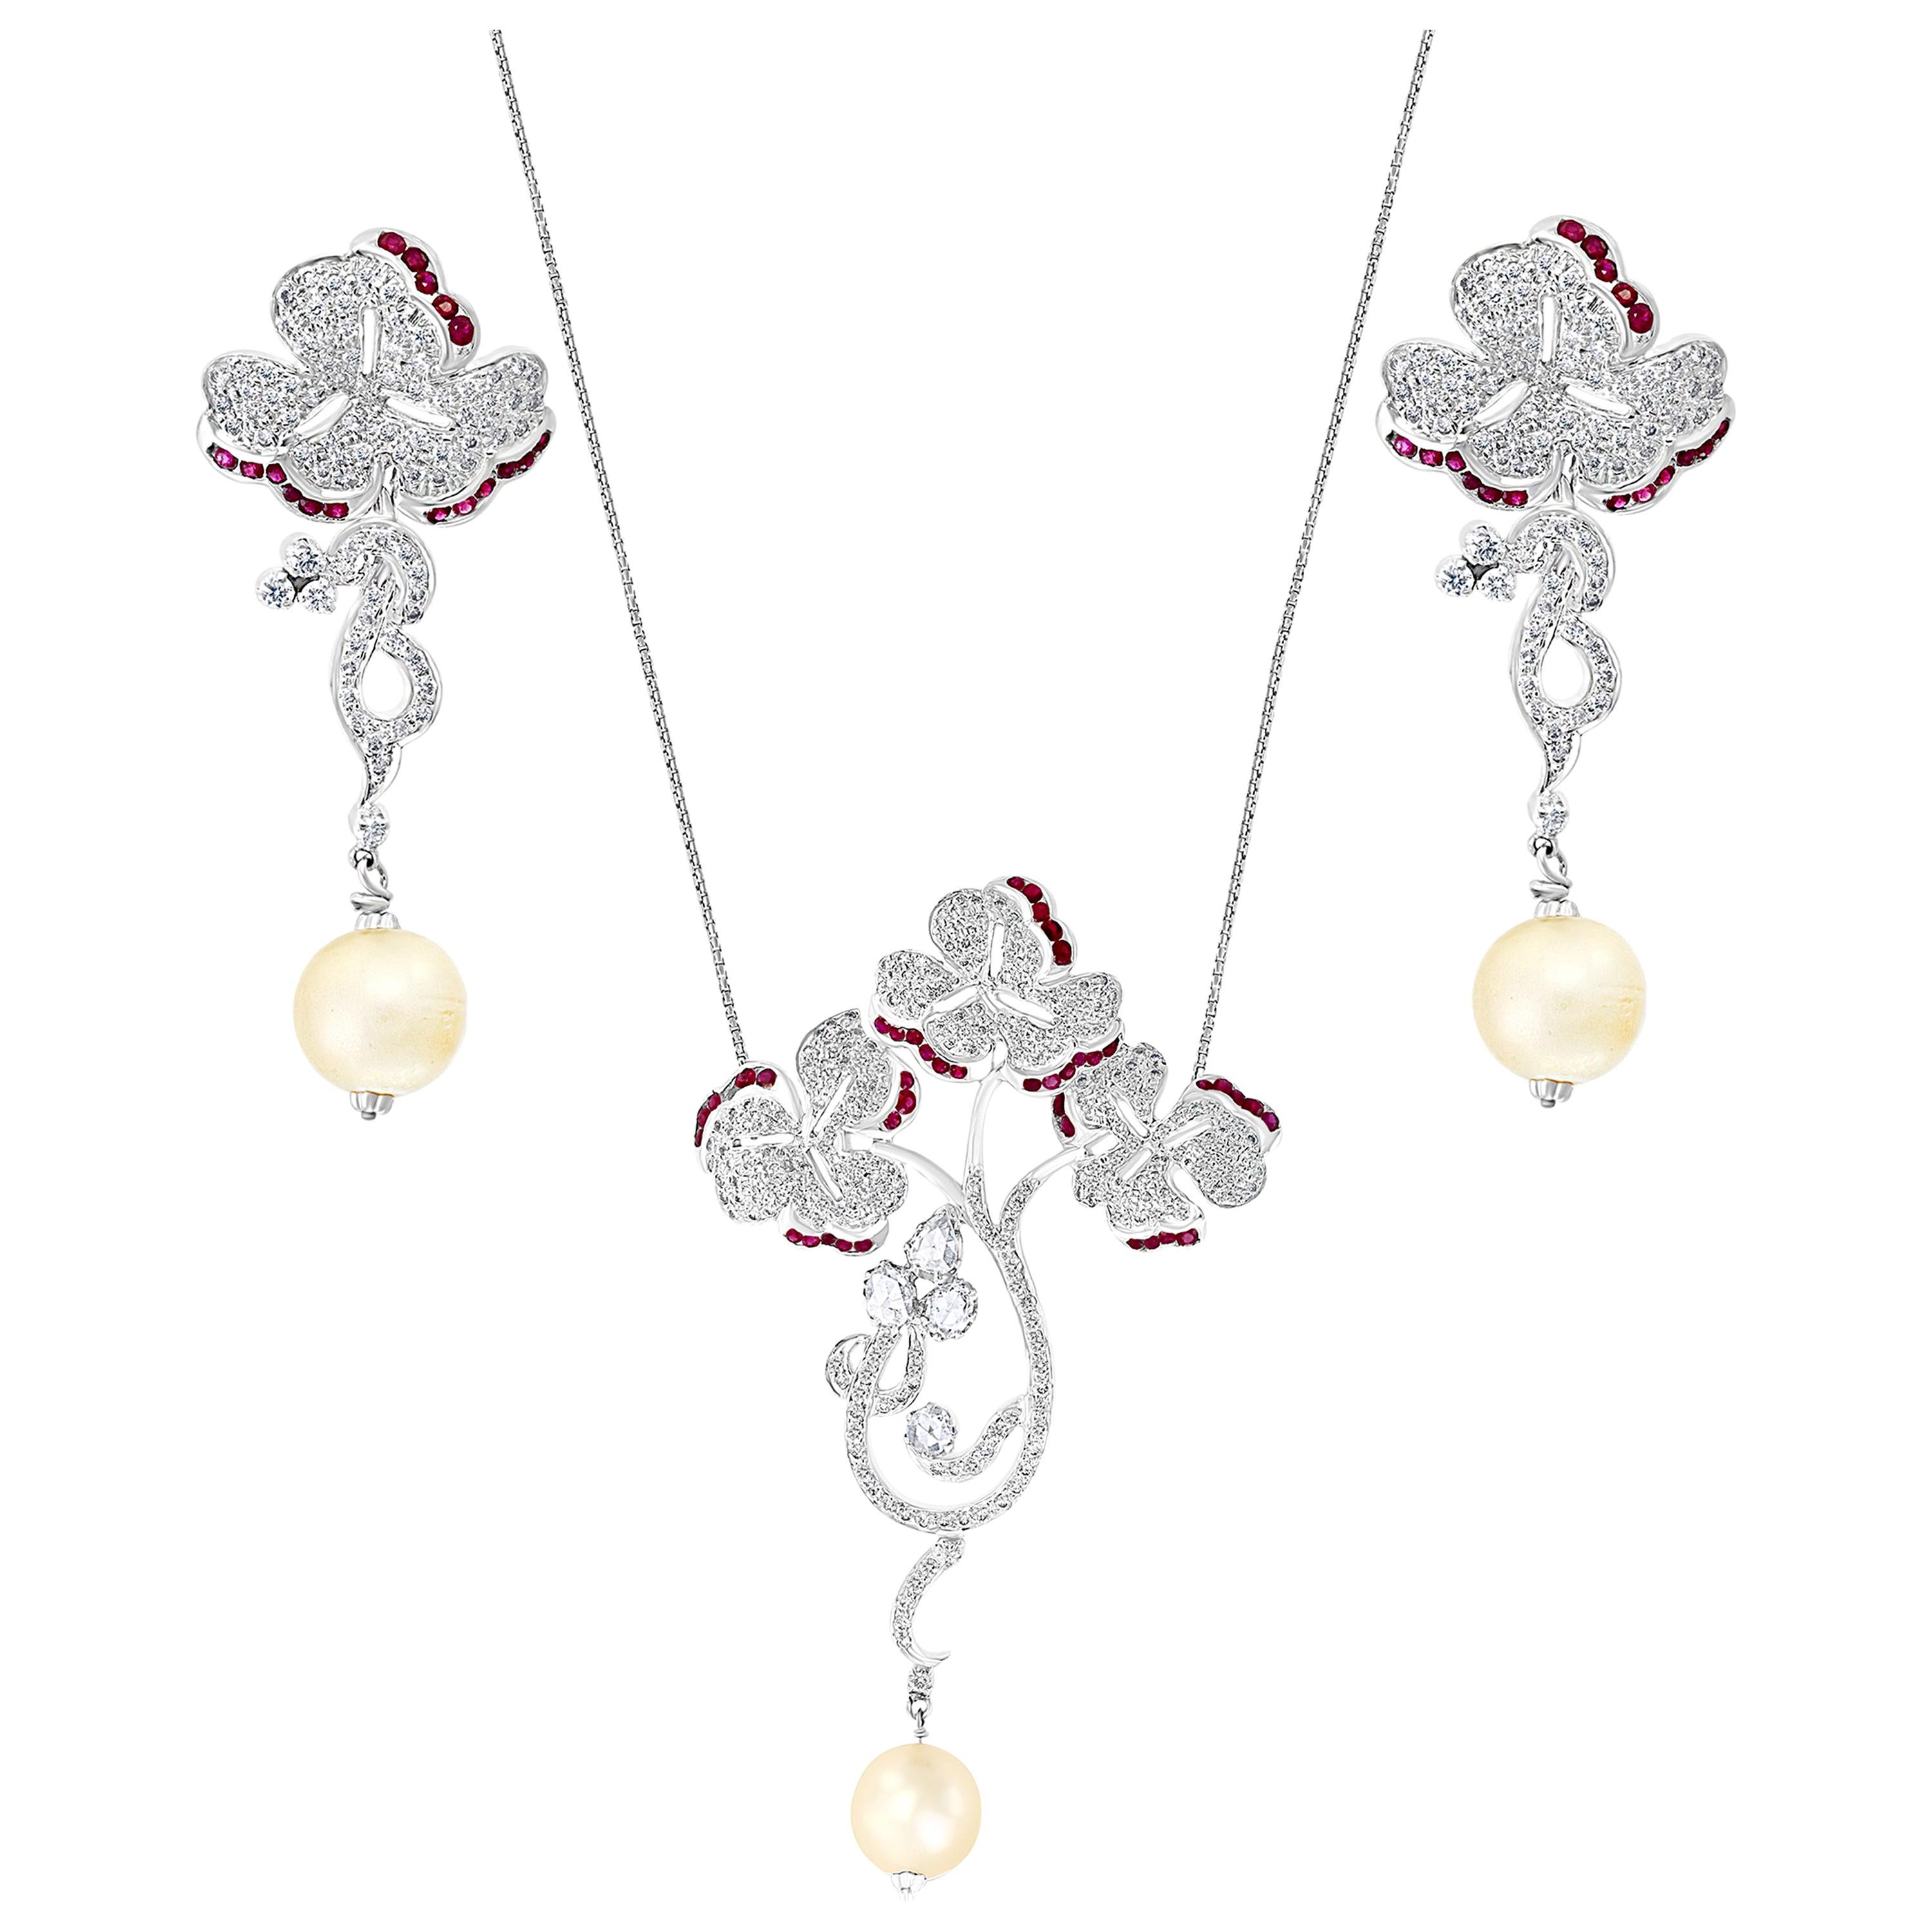 Halskette und Ohrringe aus 18 Karat Weißgold mit Perlen, Rubin und Diamanten, Suite, Nachlass